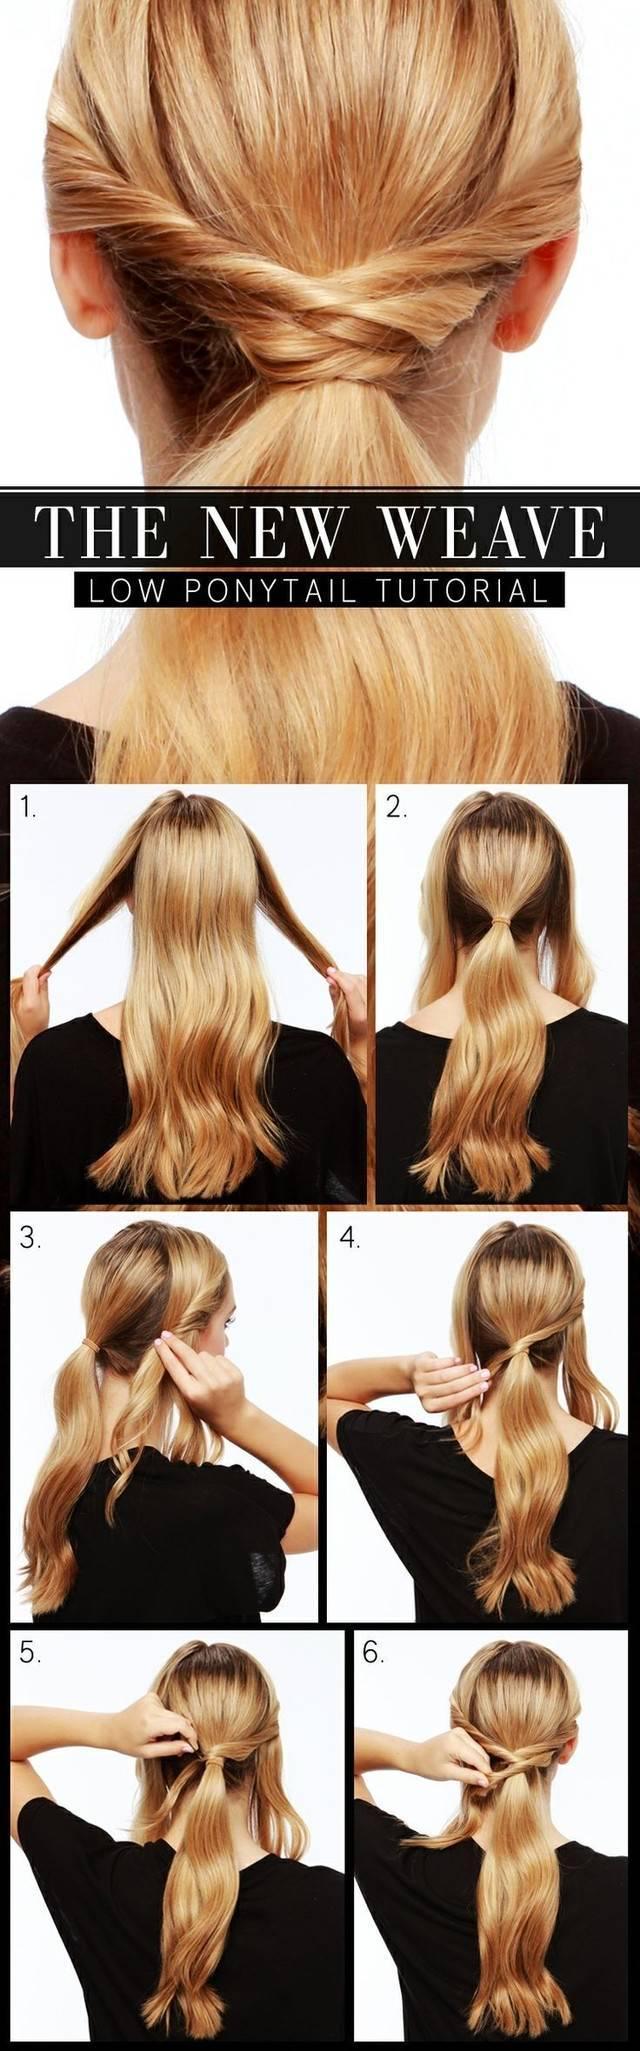 รูปภาพ:http://www.prettydesigns.com/wp-content/uploads/2015/05/The-New-Weave-Low-Ponytail-Hairstyle-Tutorial.jpg